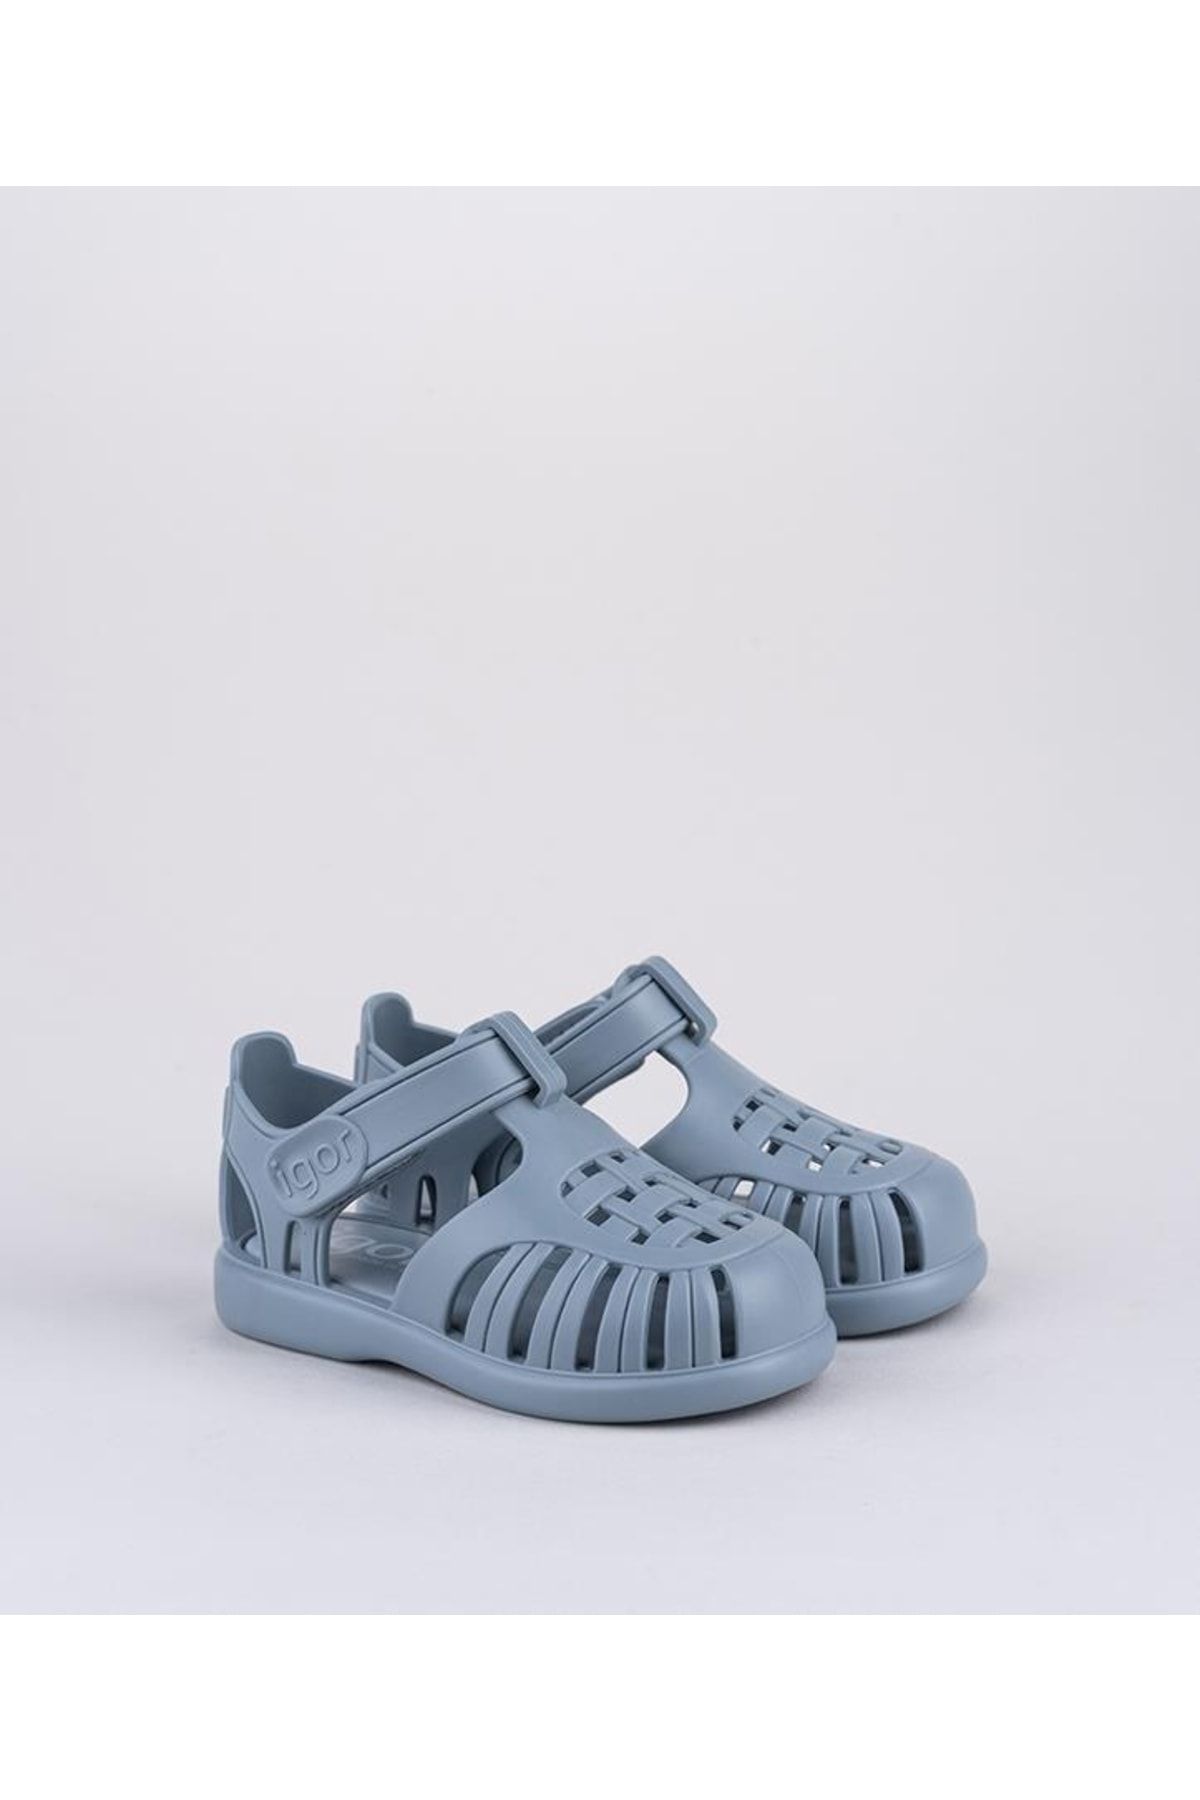 IGOR S10271-225 Tobby Solıd Bebek Çocuk Sandalet